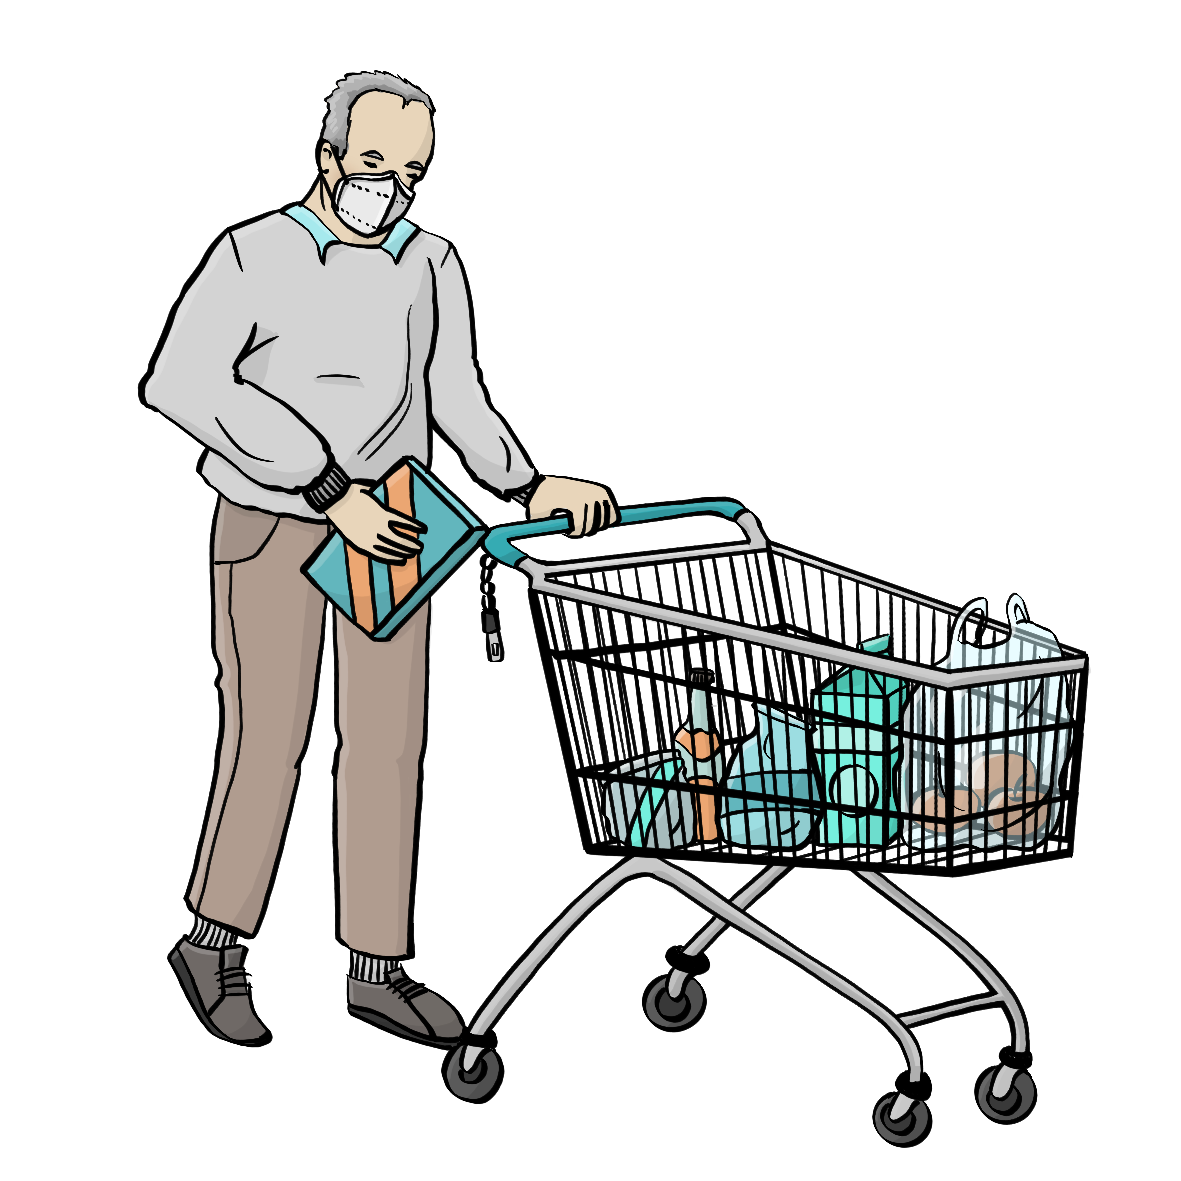 Ein Mann mit einer ffp2 Maske legt eine Schachtel in einen Einkaufswagen.